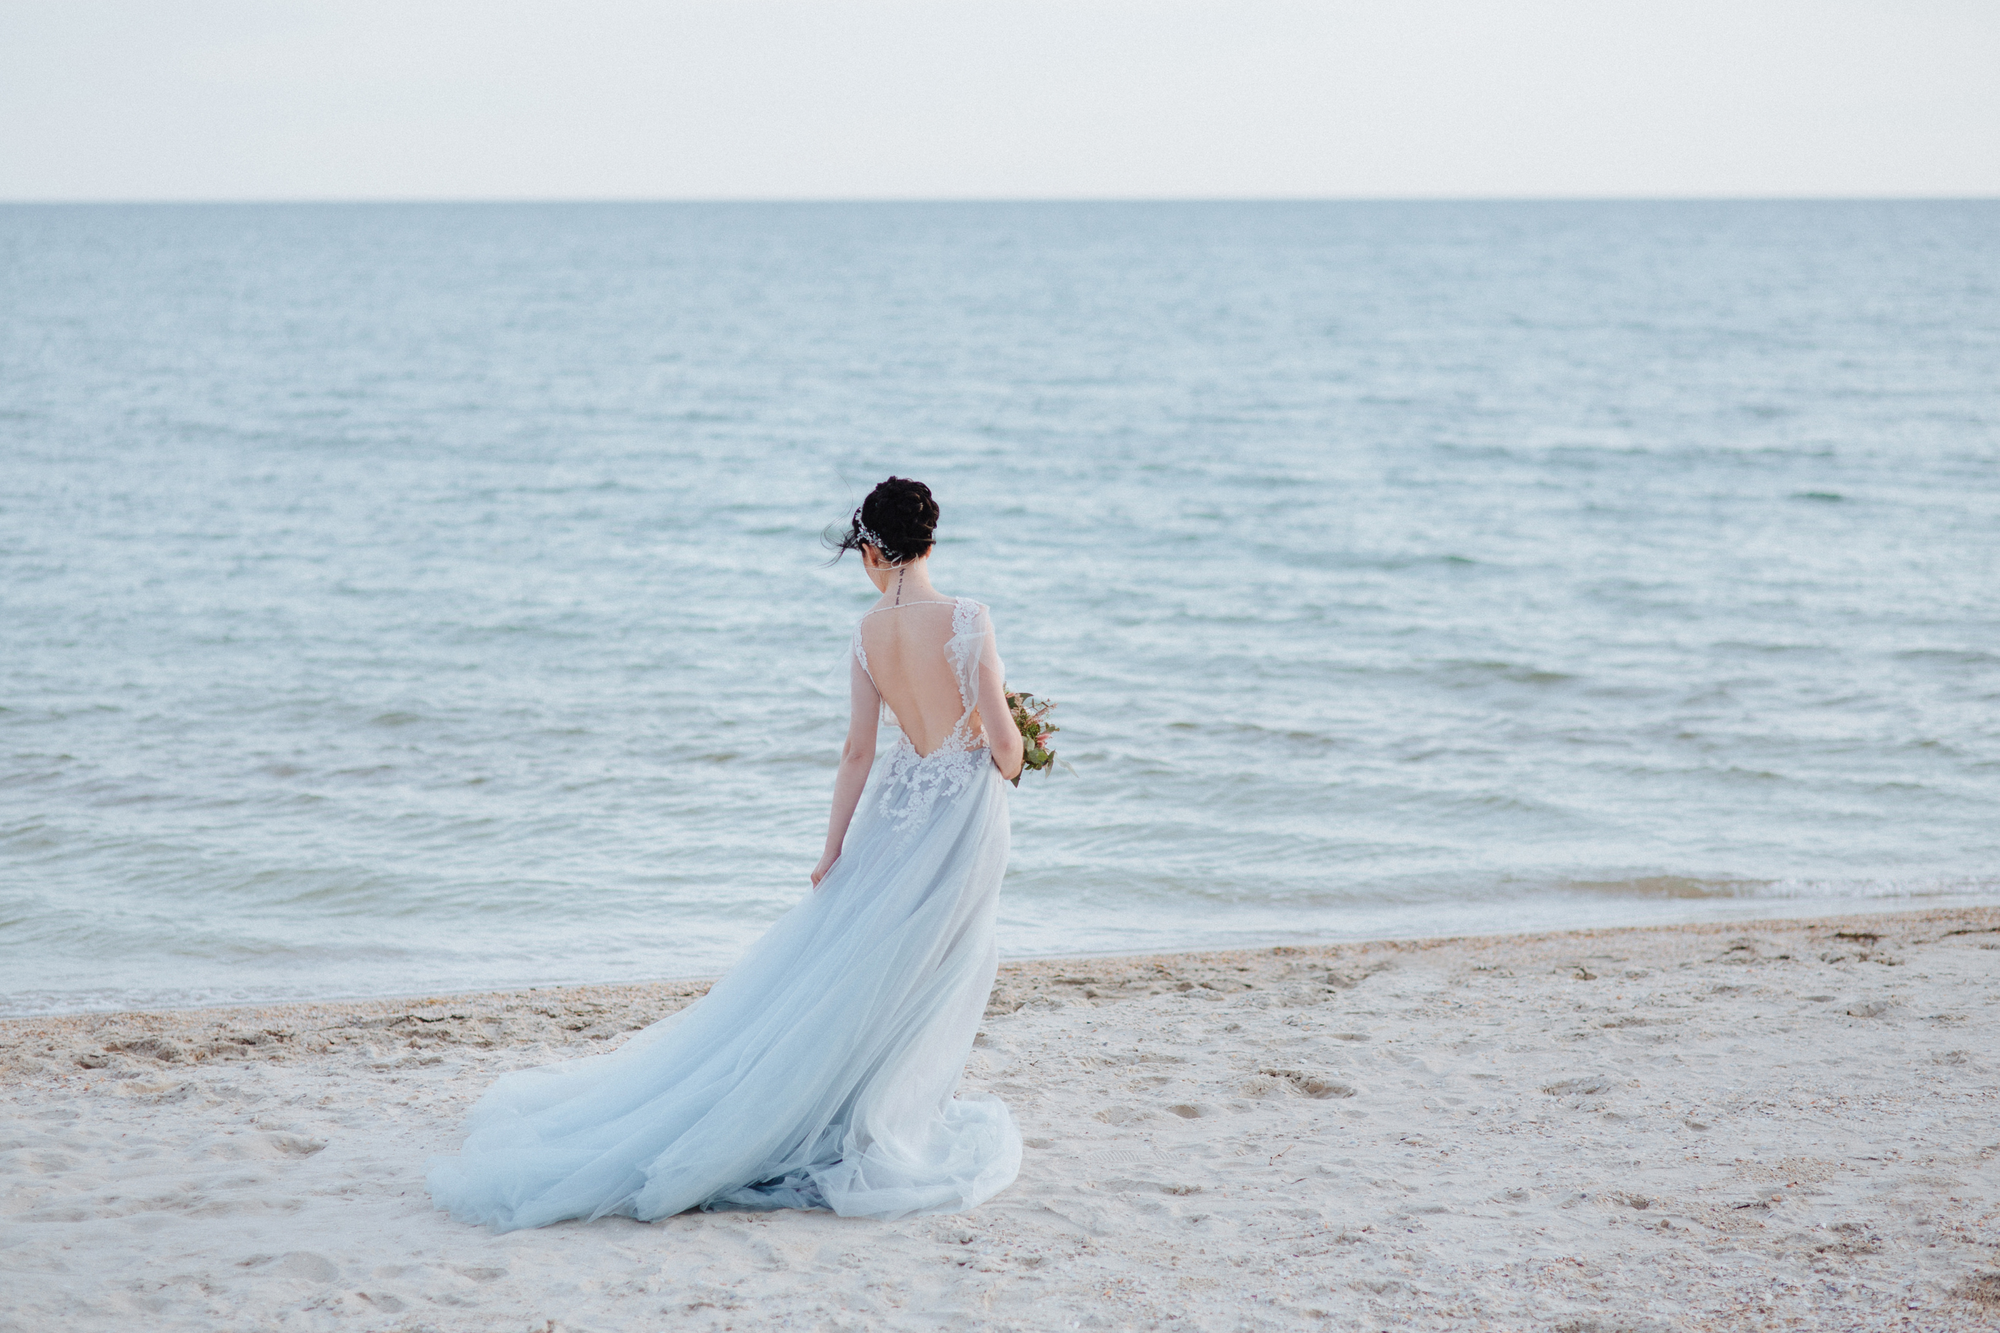 Die Braut trägt ein blaues Hochzeitskleid am Strand.